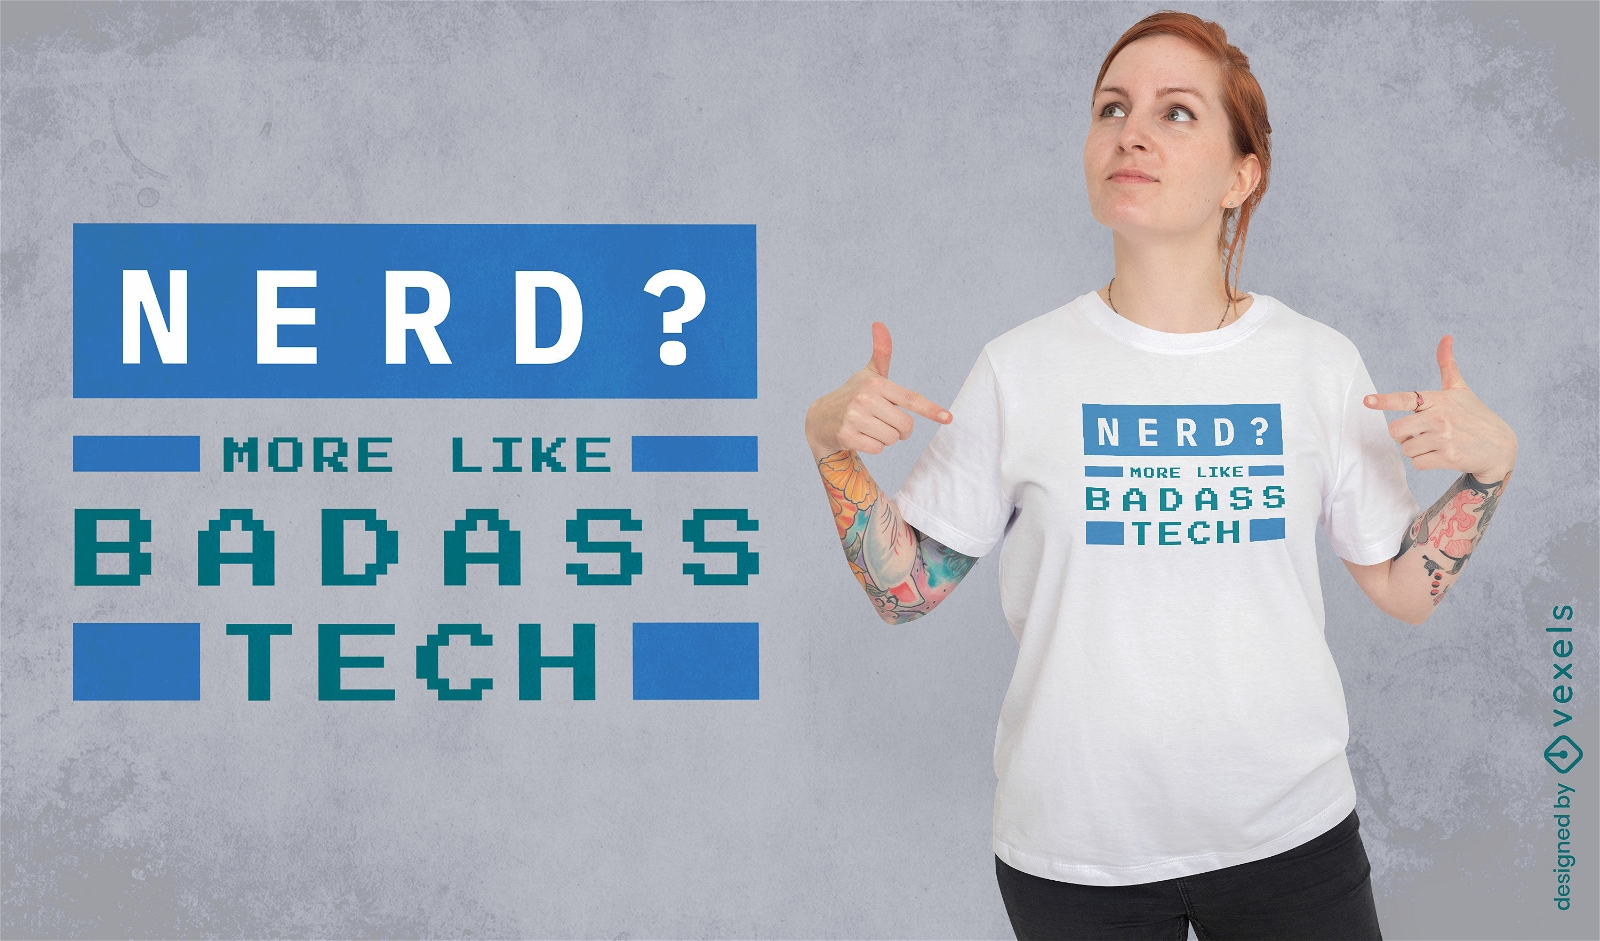 Badass tech t-shirt design